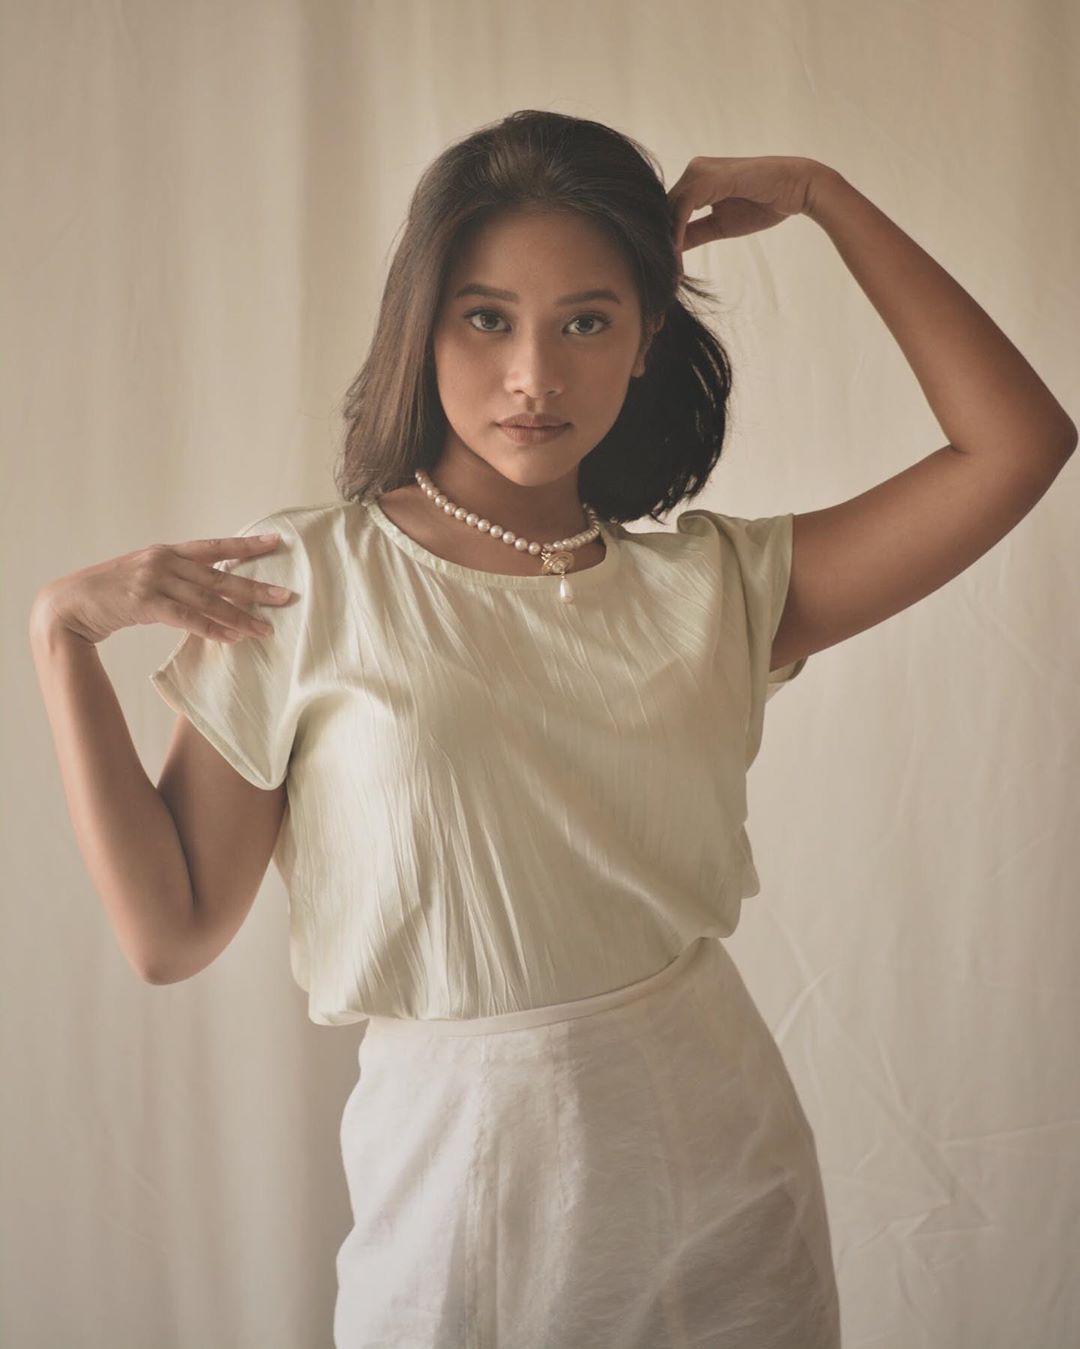 10 Pesona Siti Adira Kania, Putri Cantik Ikke Nurjanah yang Punya Suara Merdu